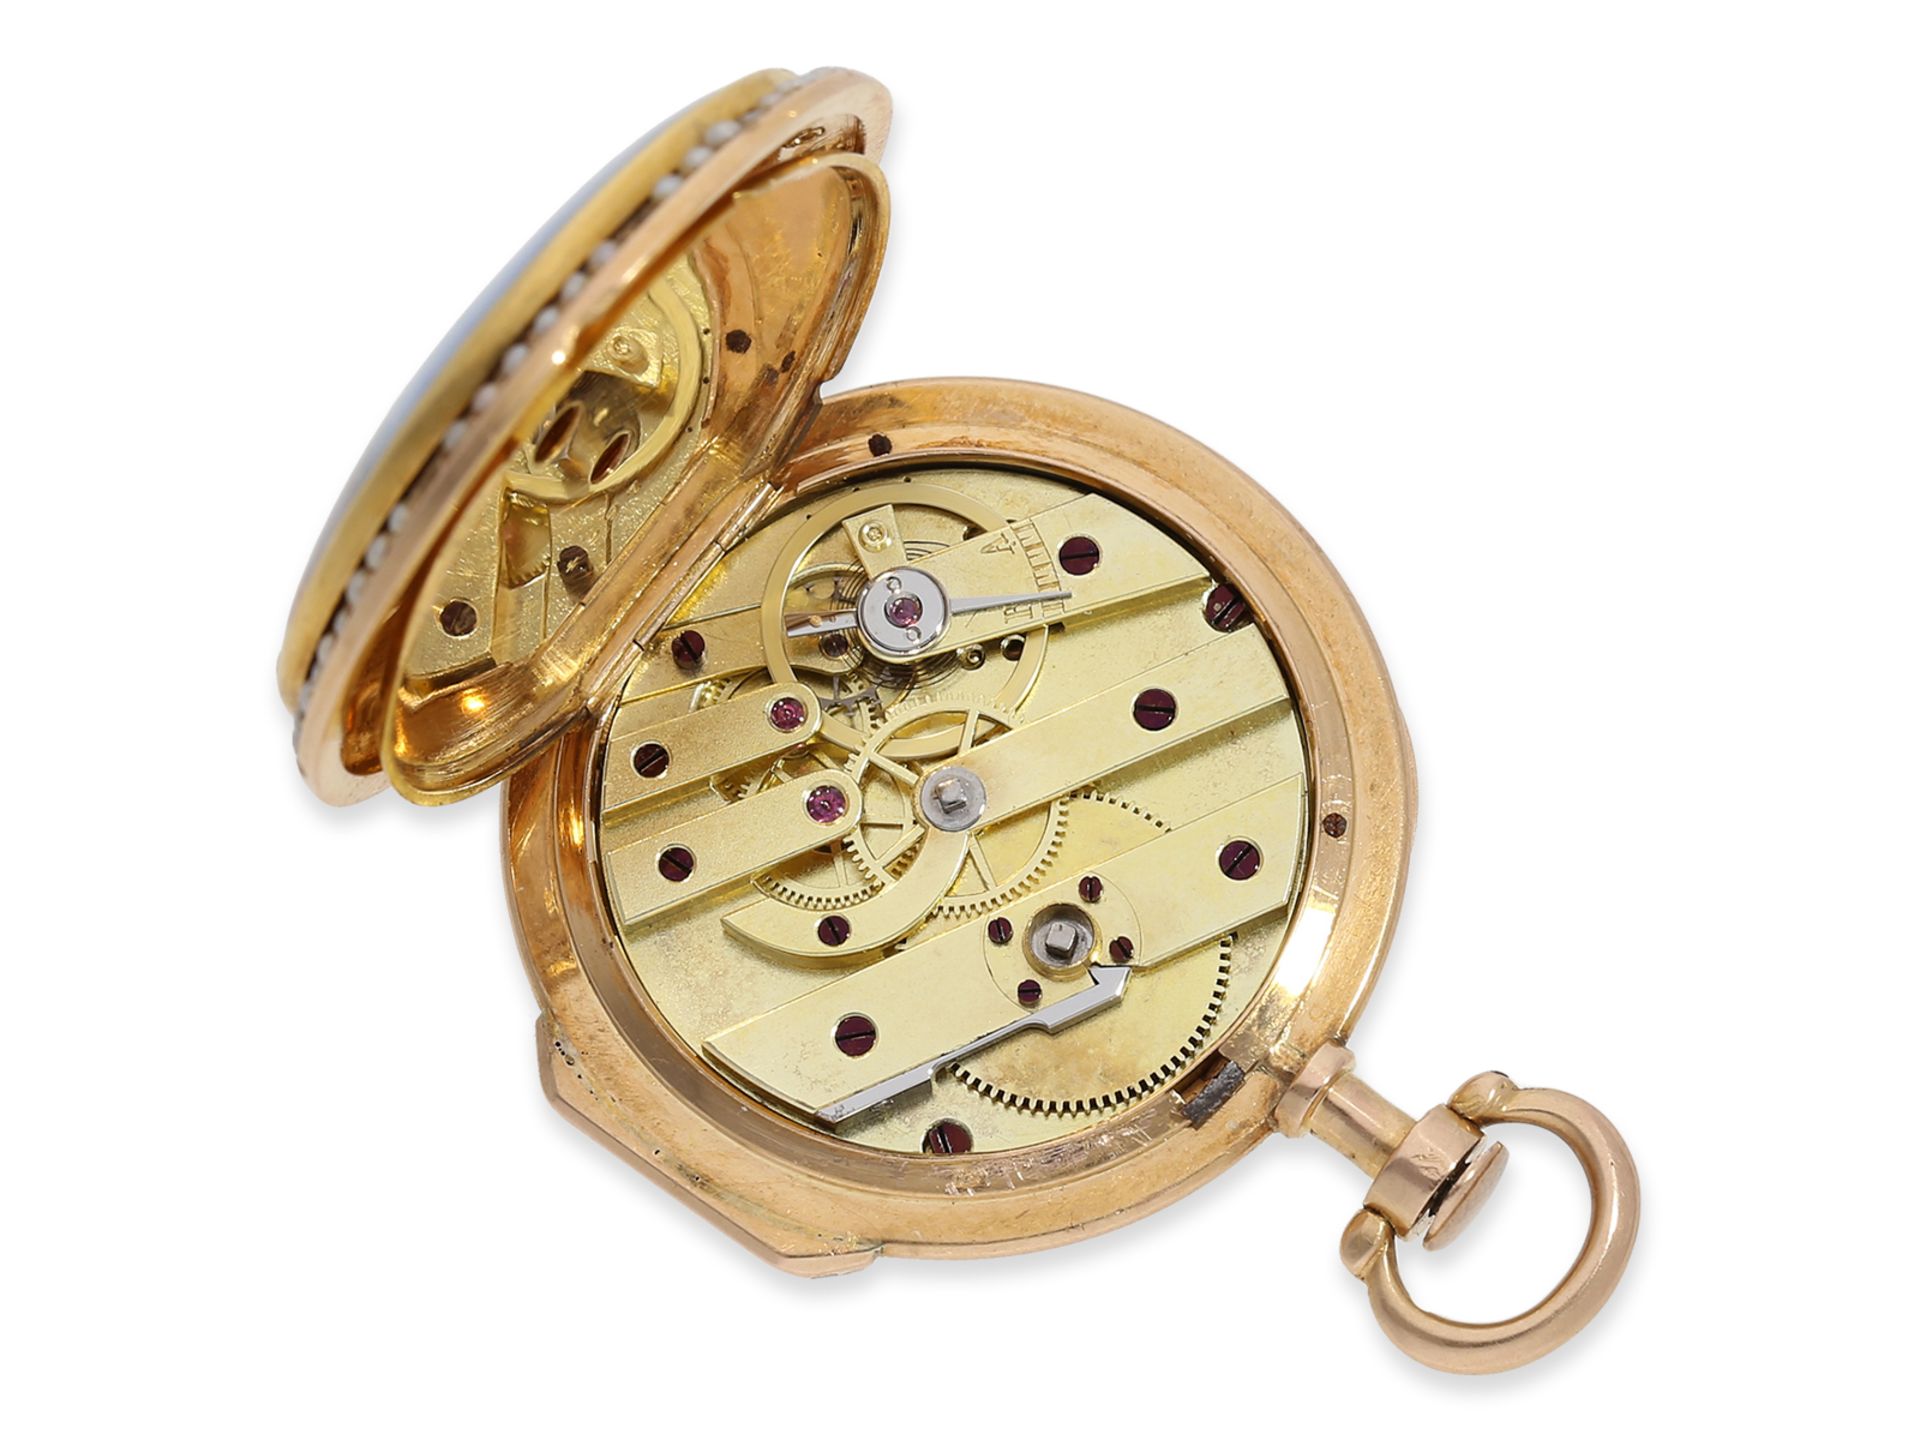 Taschenuhr: exquisite "Louis XV" Gold/Emaille-Spindeluhr mit Perlenbesatz, fantastische Qualität, kö - Bild 3 aus 6